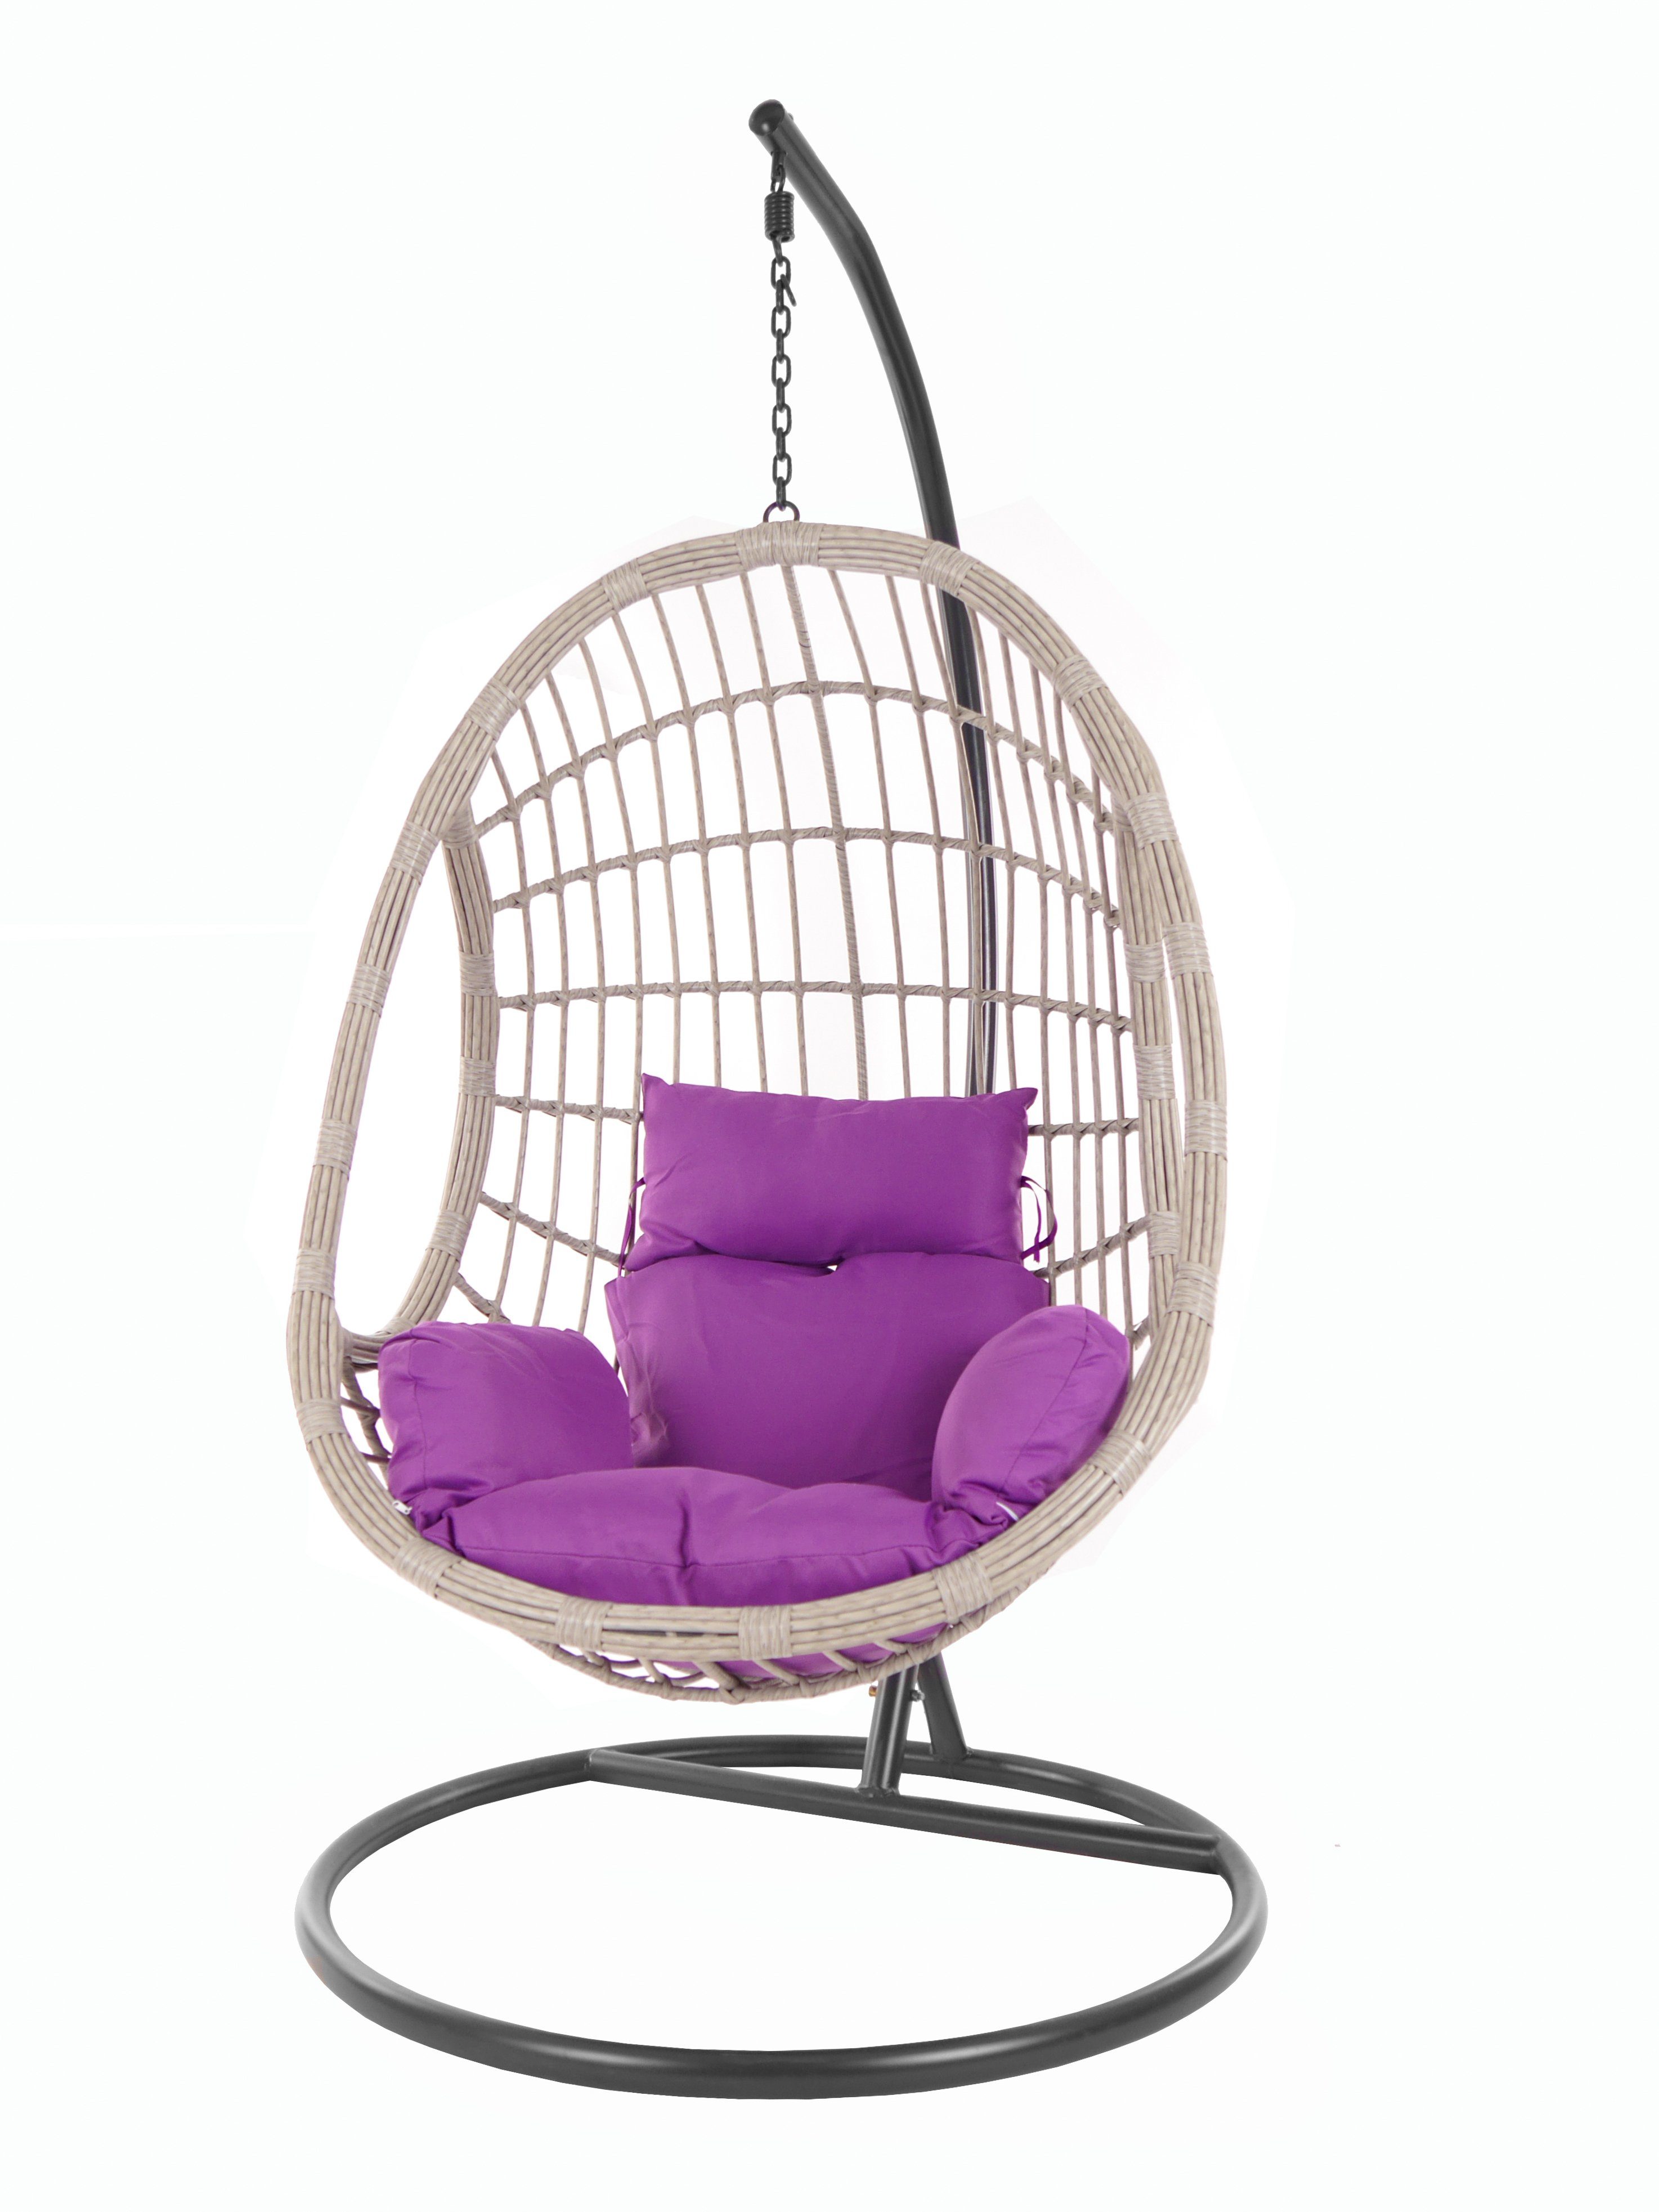 (4050 Hängesessel Nest-Kissen Hängesessel violet) lila KIDEO PALMANOVA Gestell Loungemöbel, Nest-Kissen und grey Farbe, Kissen, Schwebesessel melange mit Komplettset,